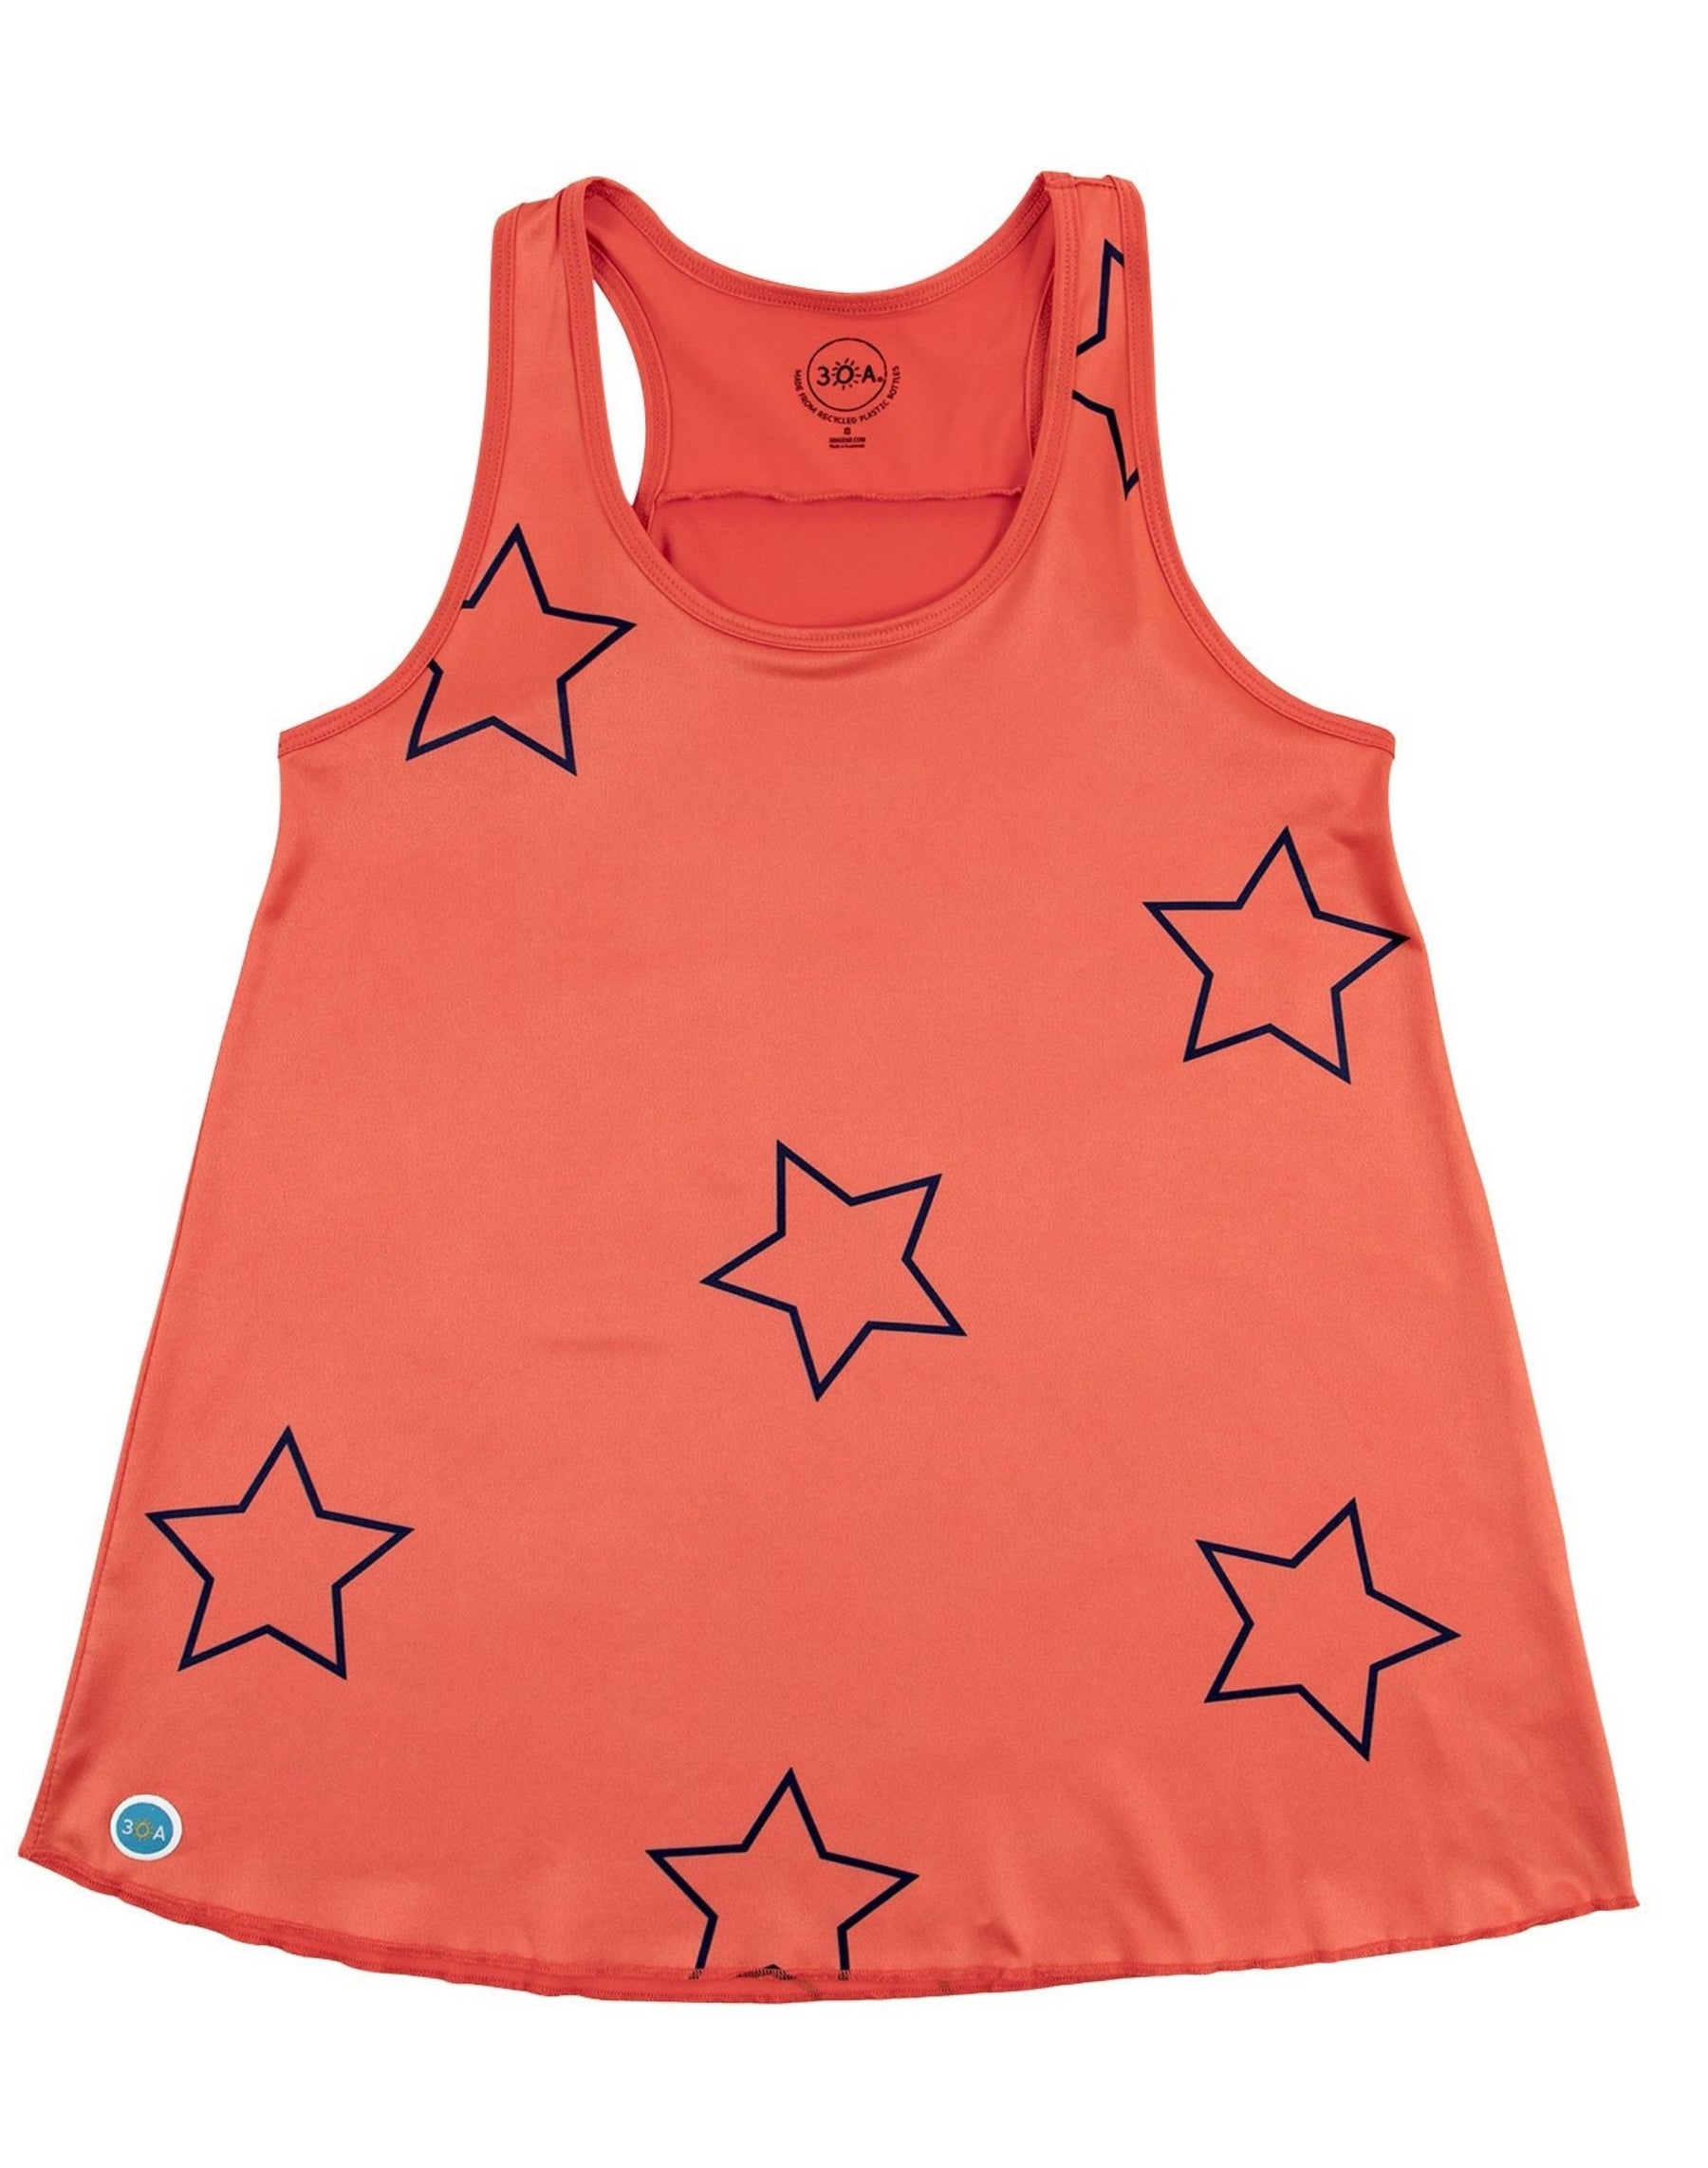 Stars Tank Top Sun Shirt